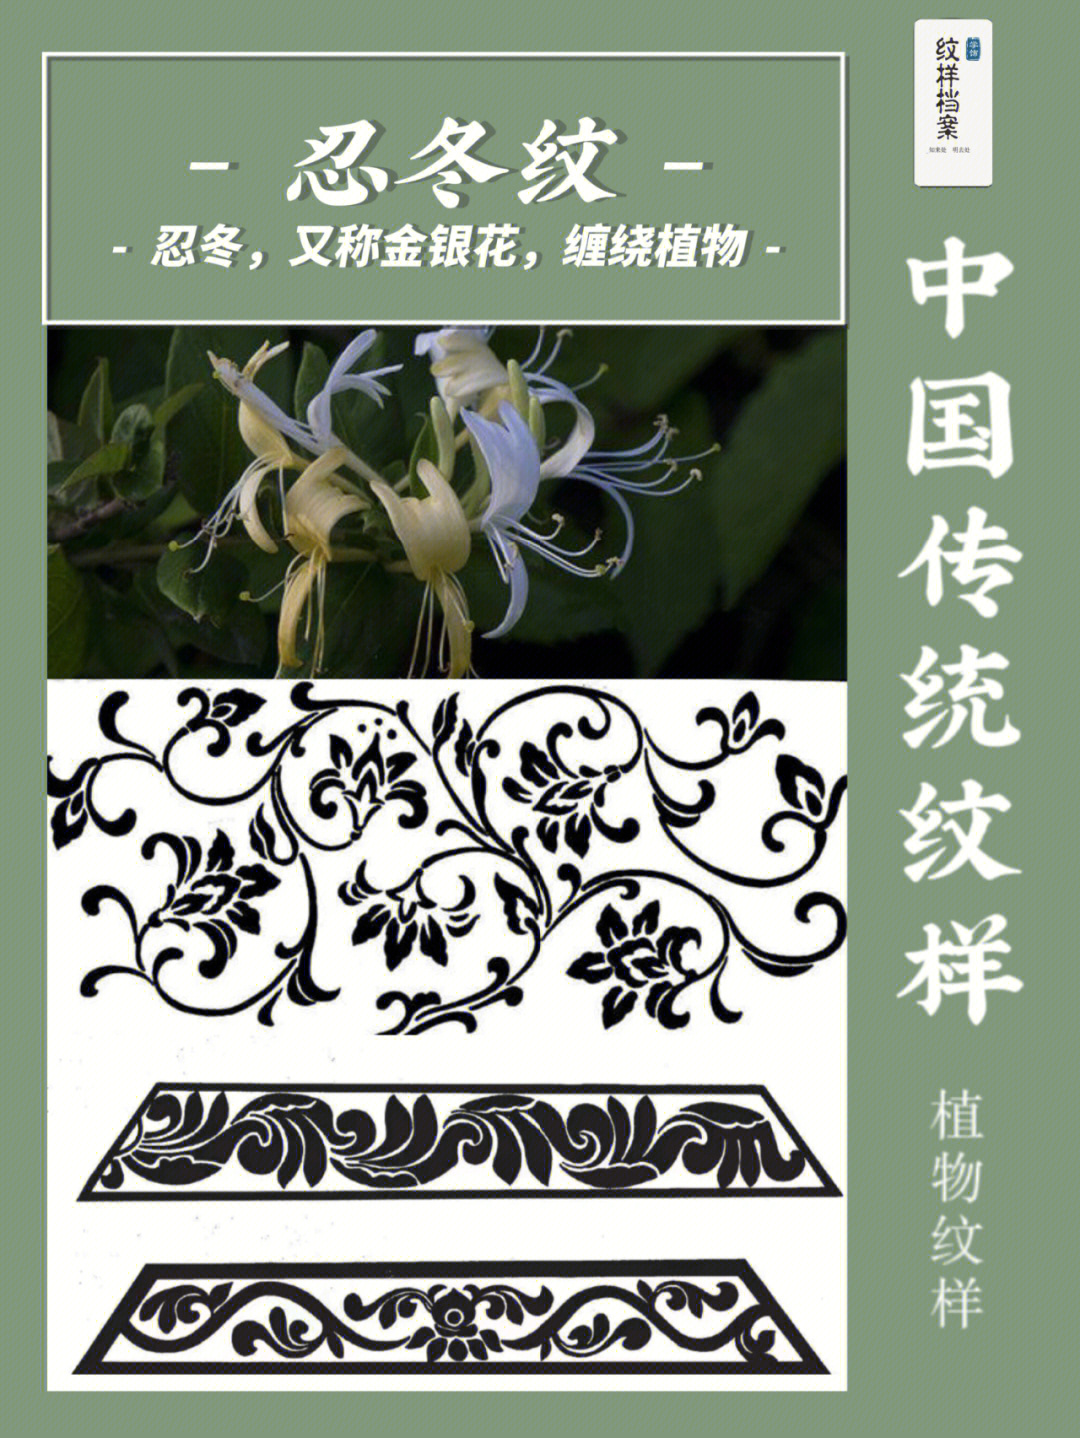 中国传统纹样—忍冬纹 设计素材